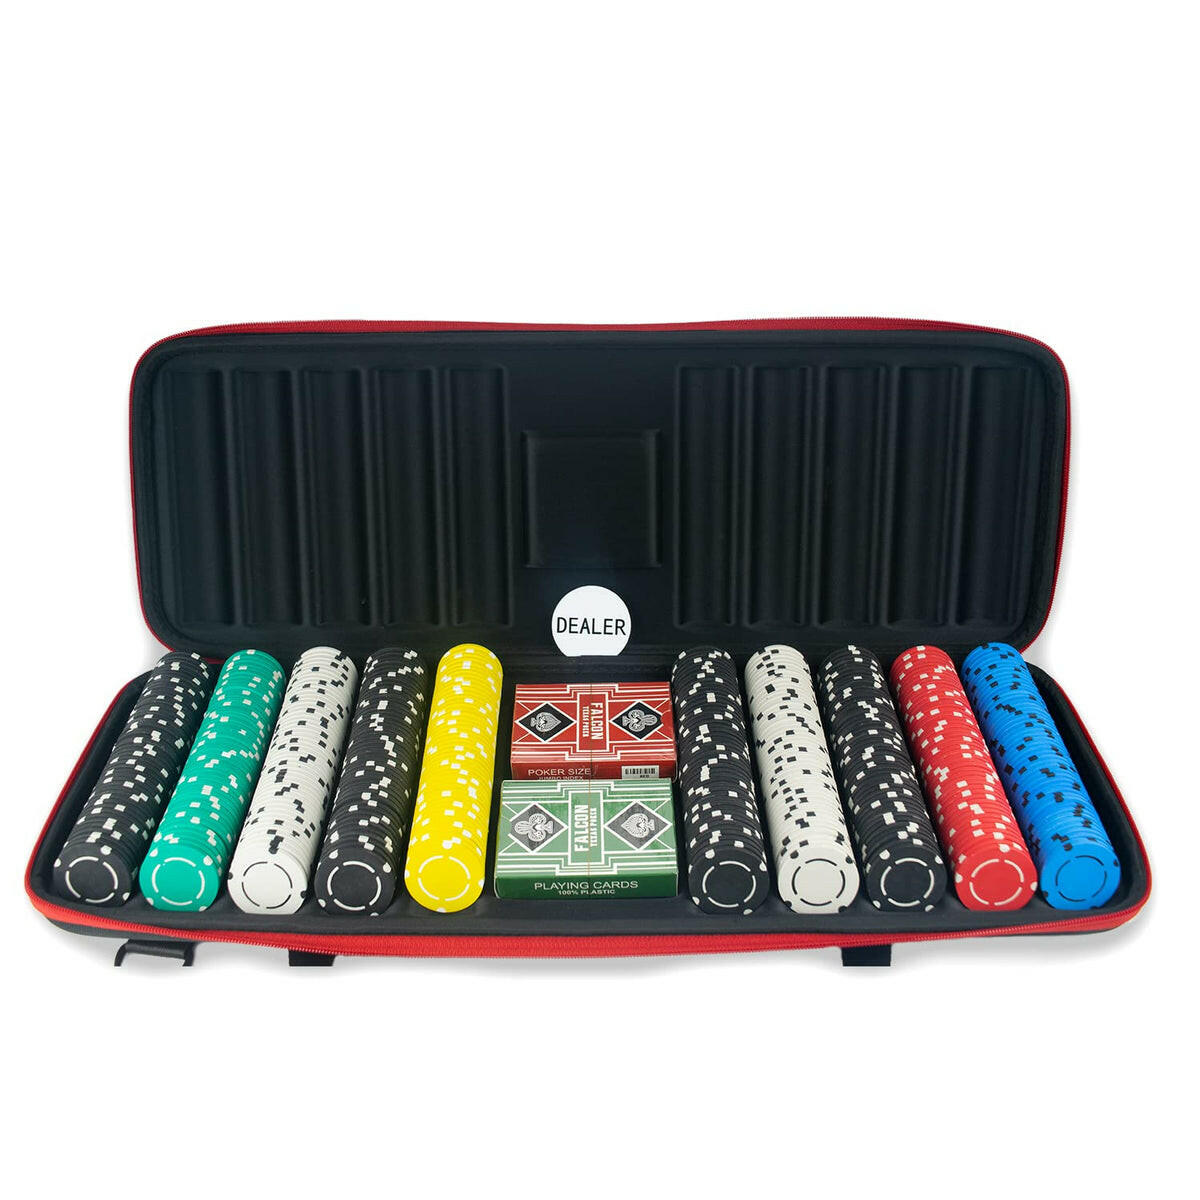 Buy Online Casinokart 300 Clay Poker Chip Set At Discount Price